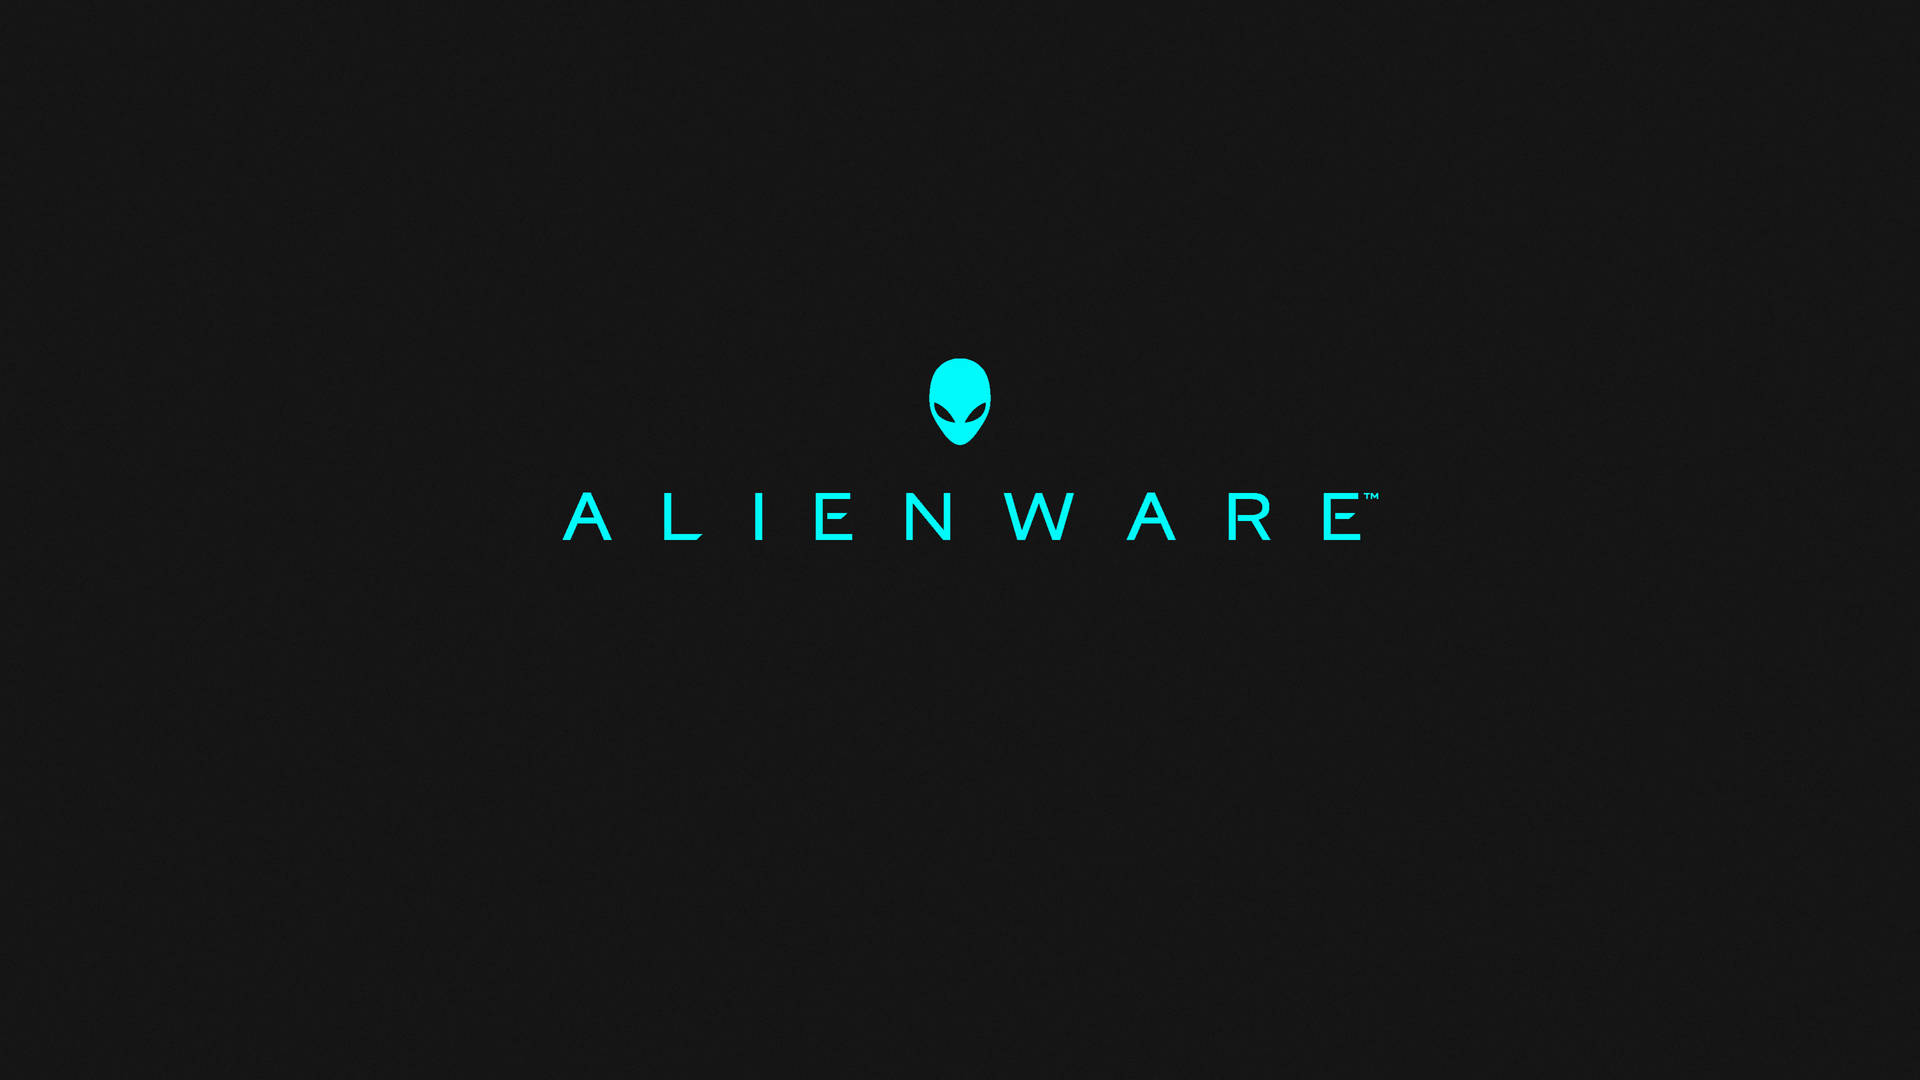 3840x2160 Alienware Minimalist Background